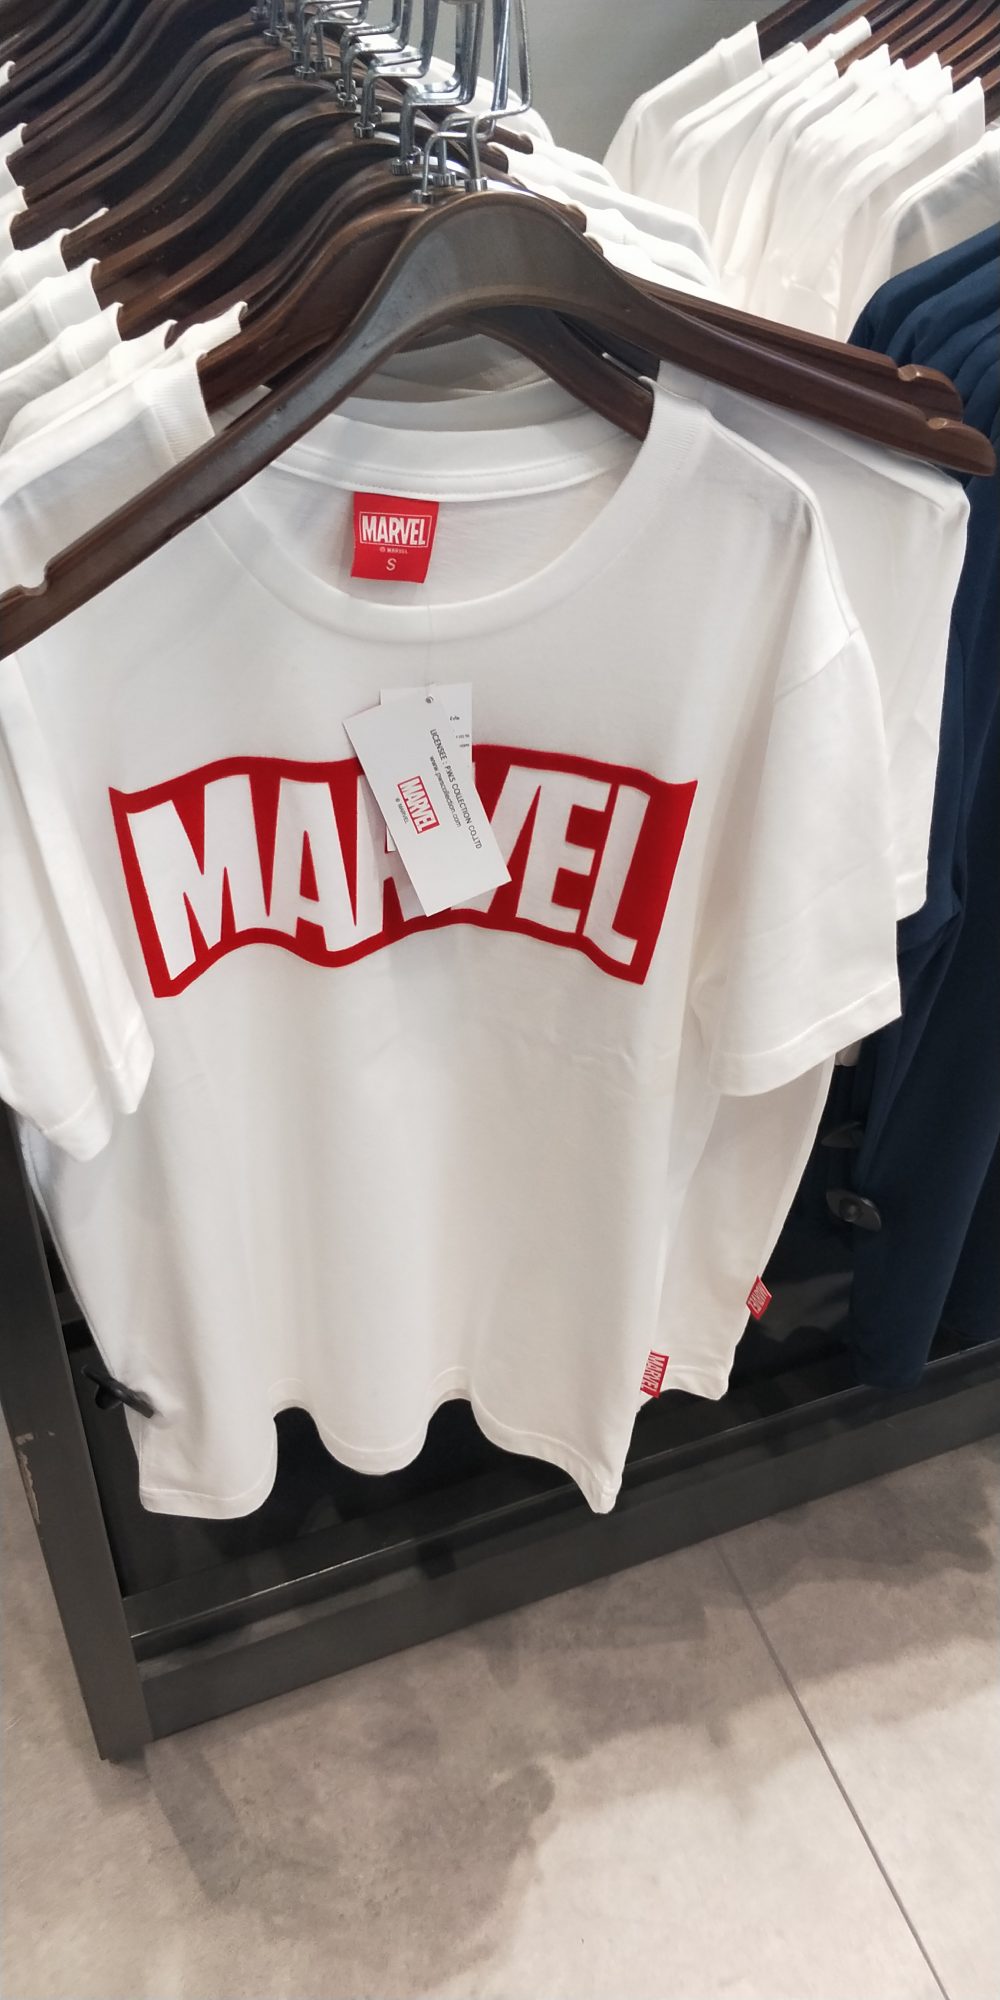 Marvel泰國漫威基地 主題周邊商品一覽 衣服周邊 - 泰國漫威基地 - 敗家達人推薦